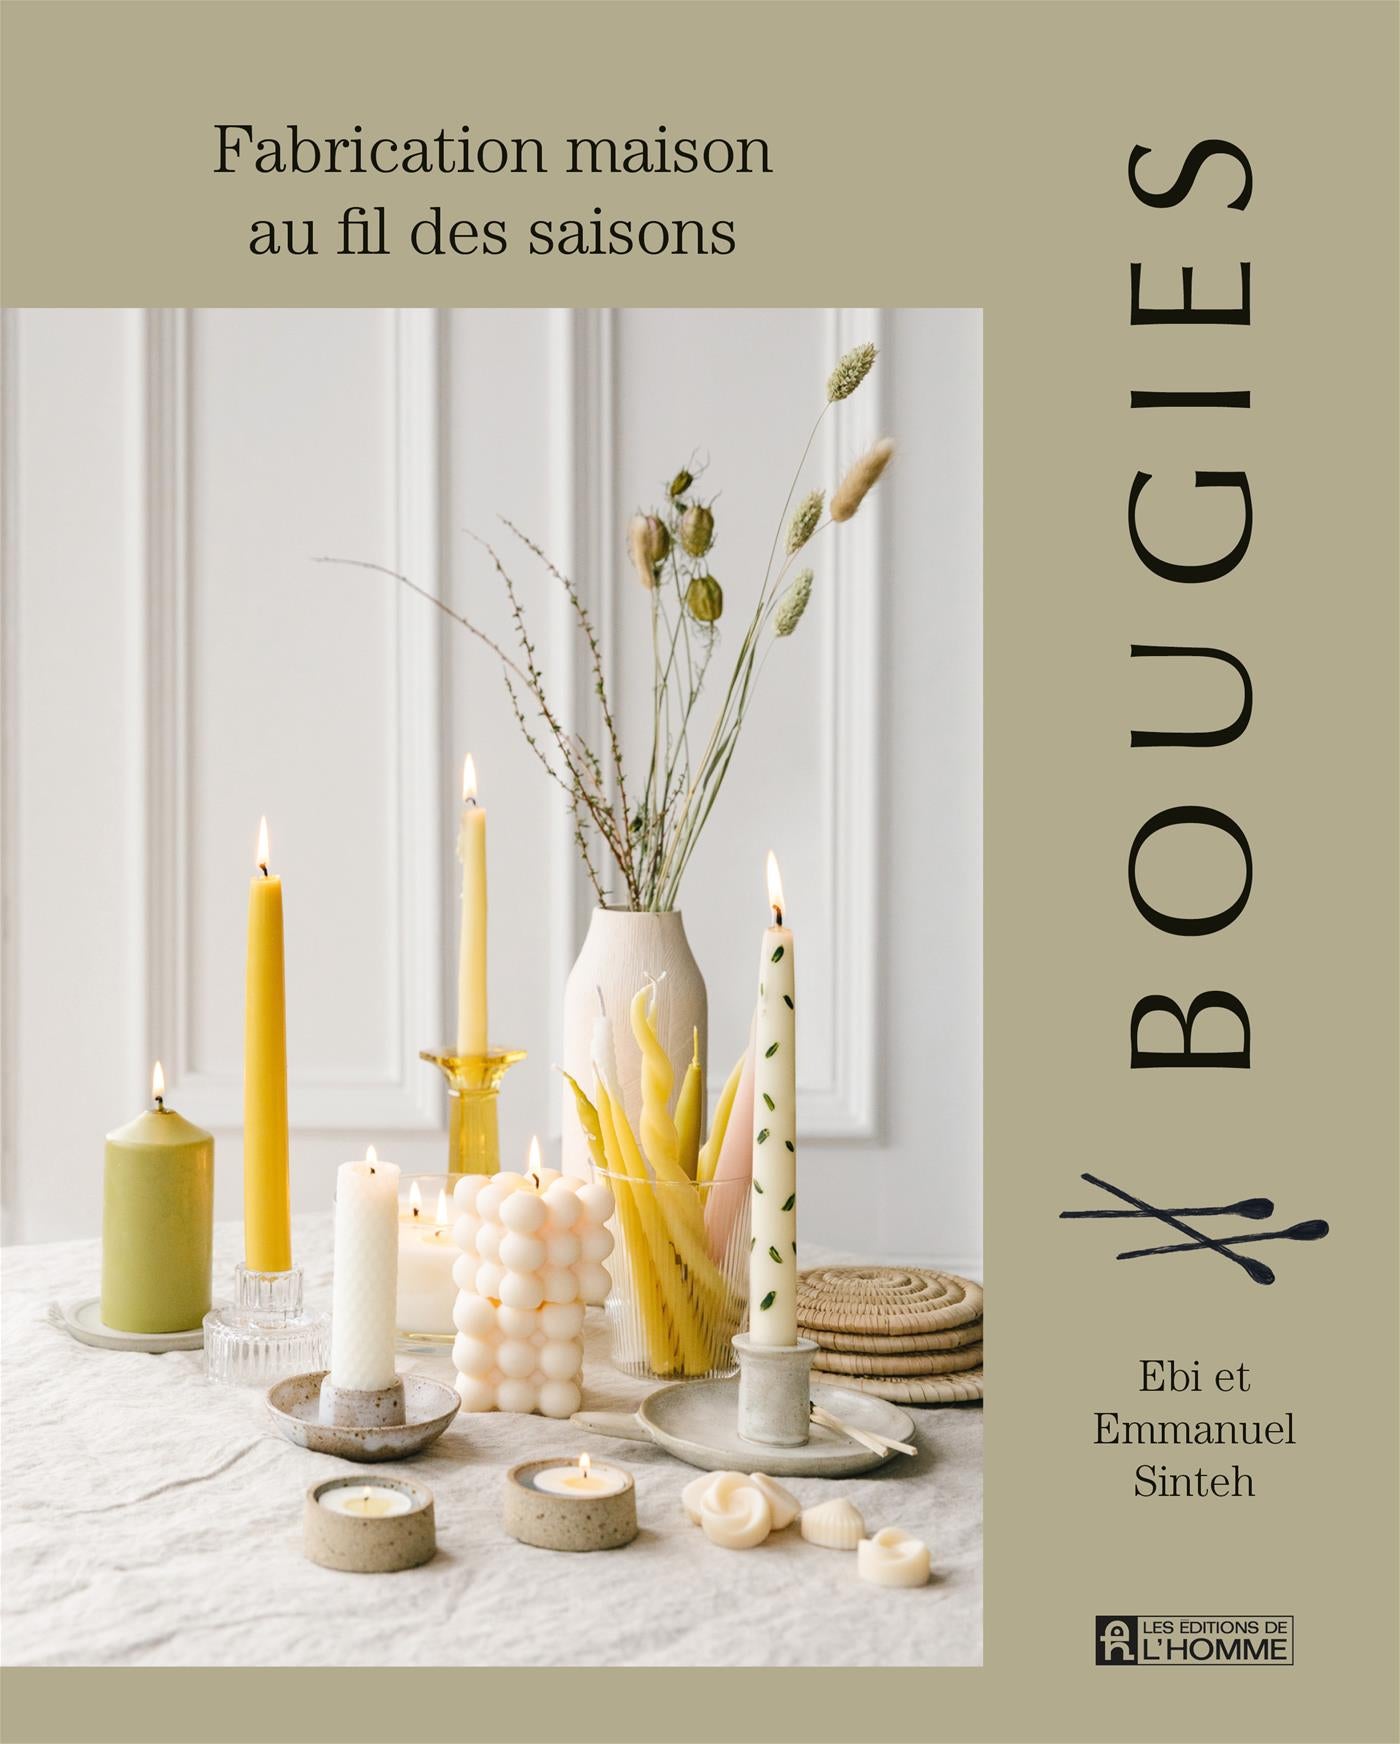 Bougies – Les Éditions de l'Homme